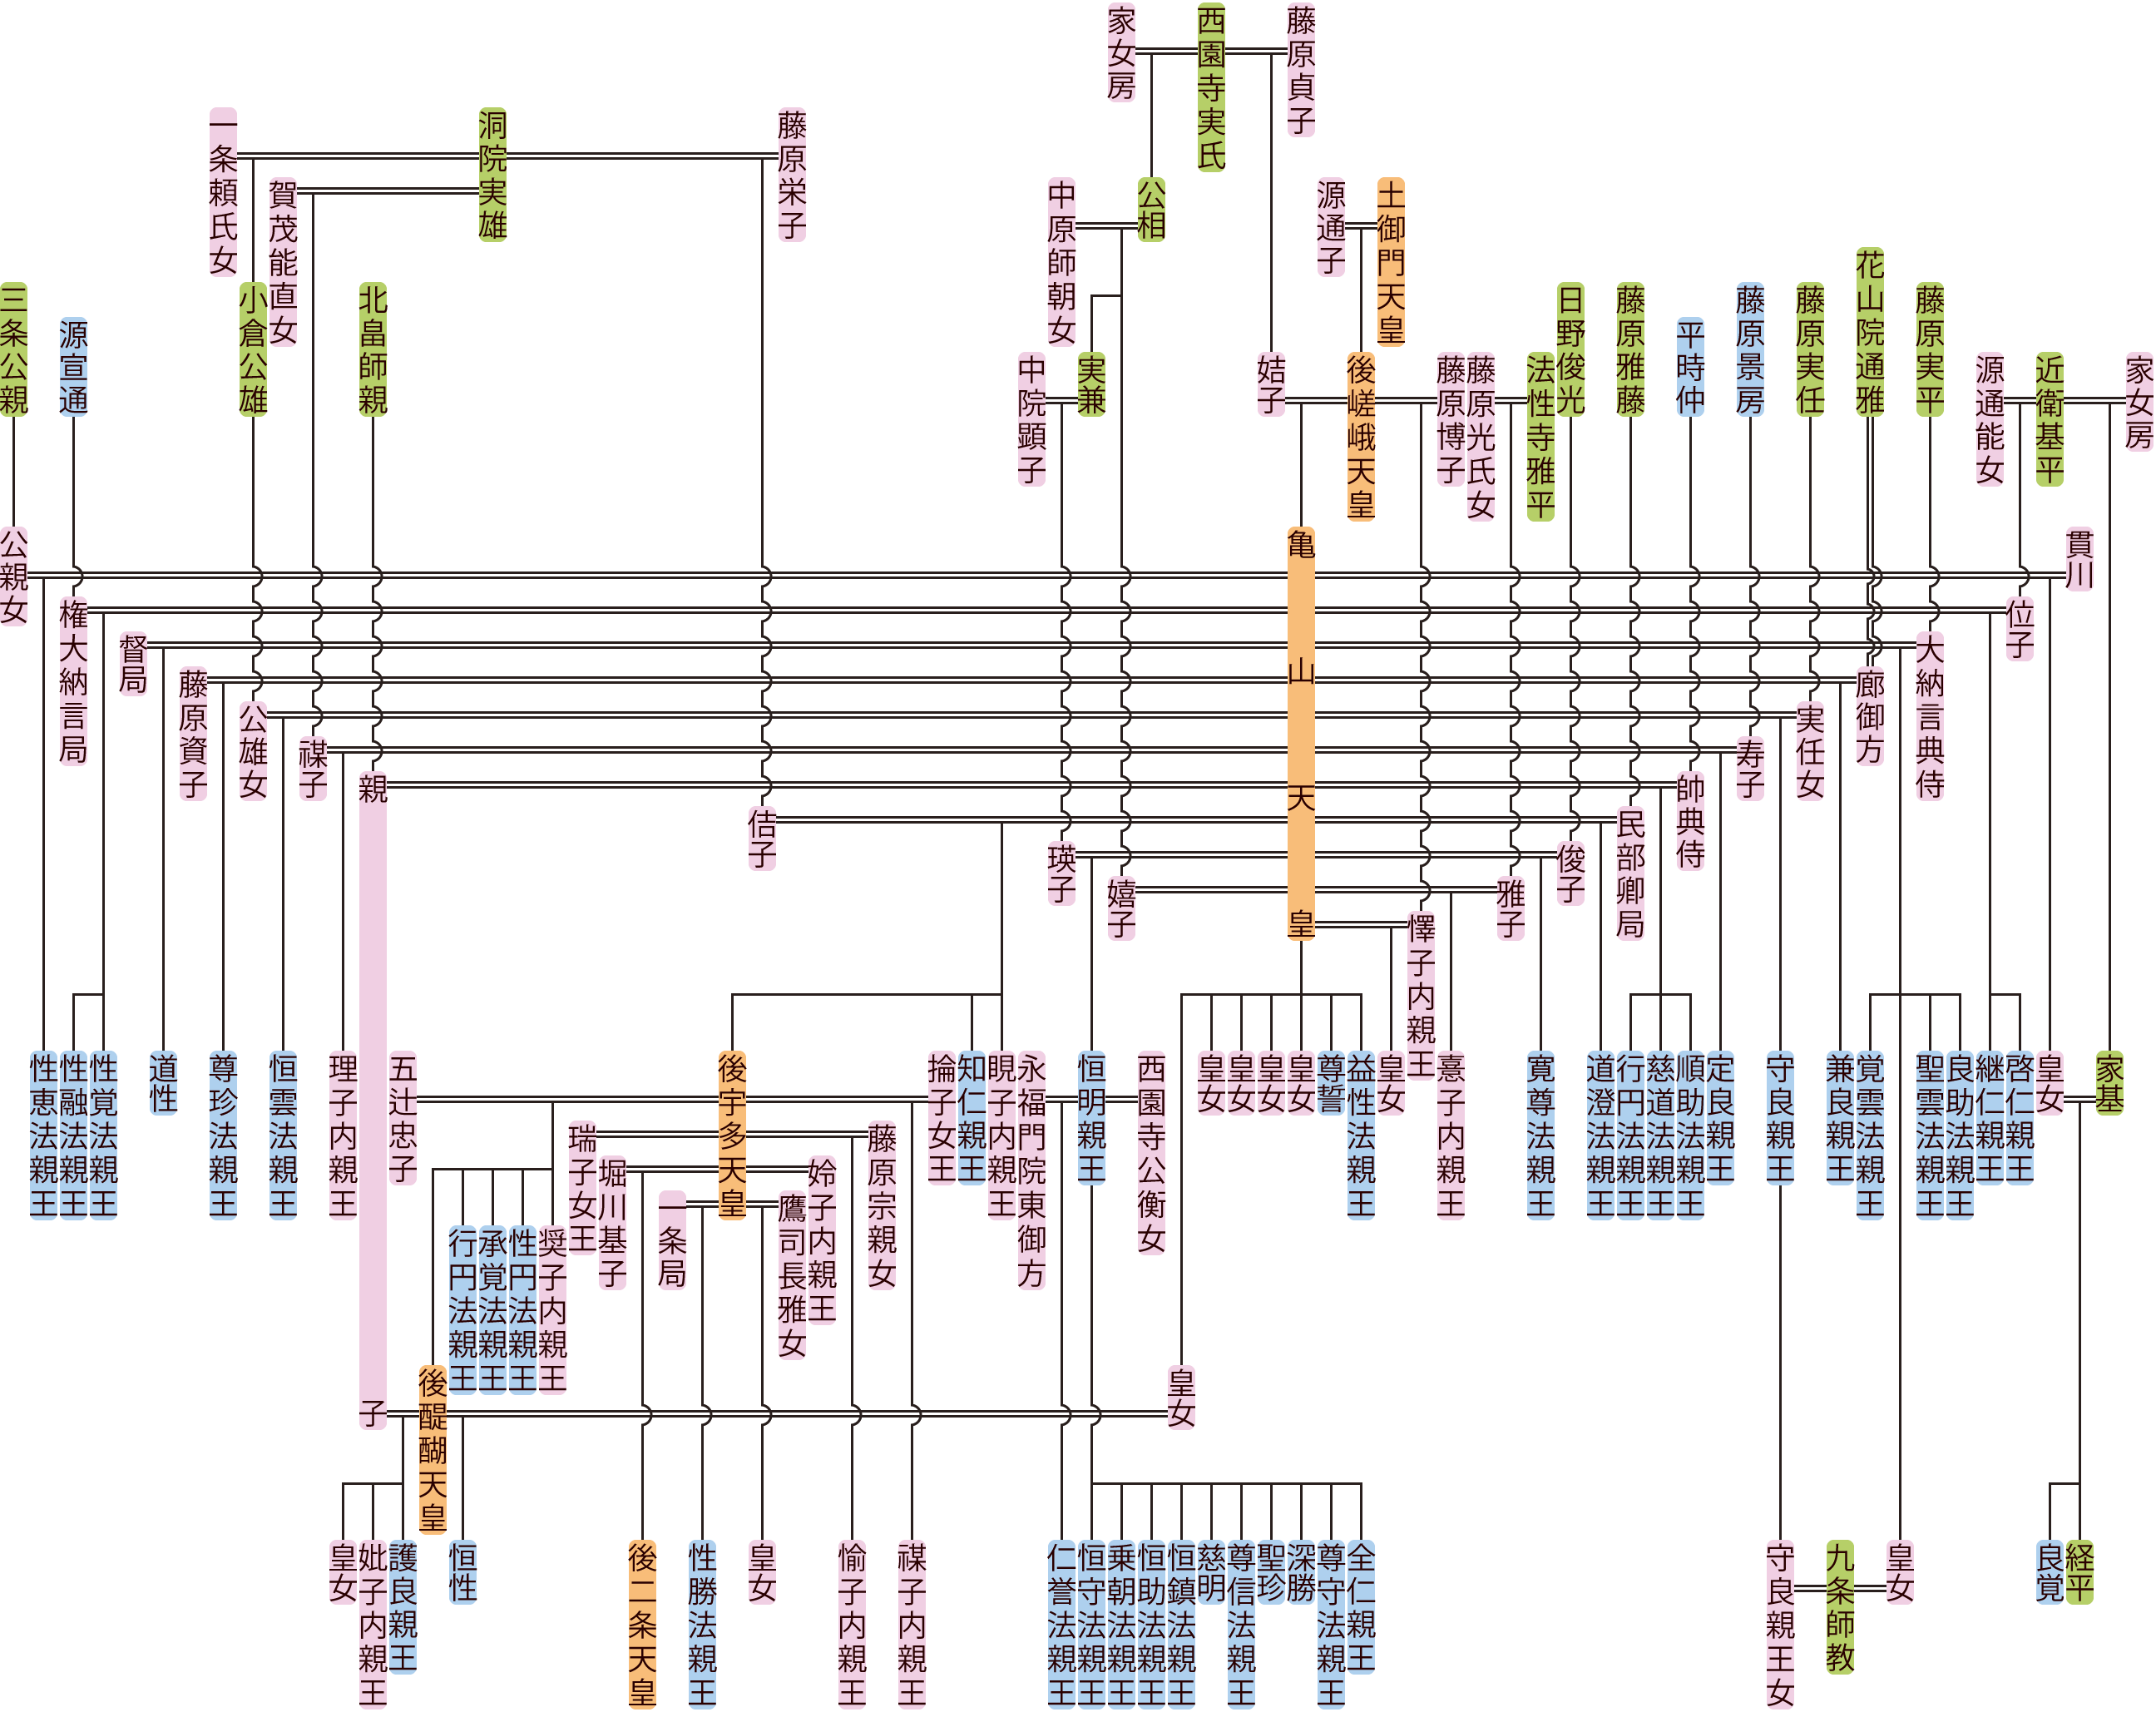 亀山天皇の系図